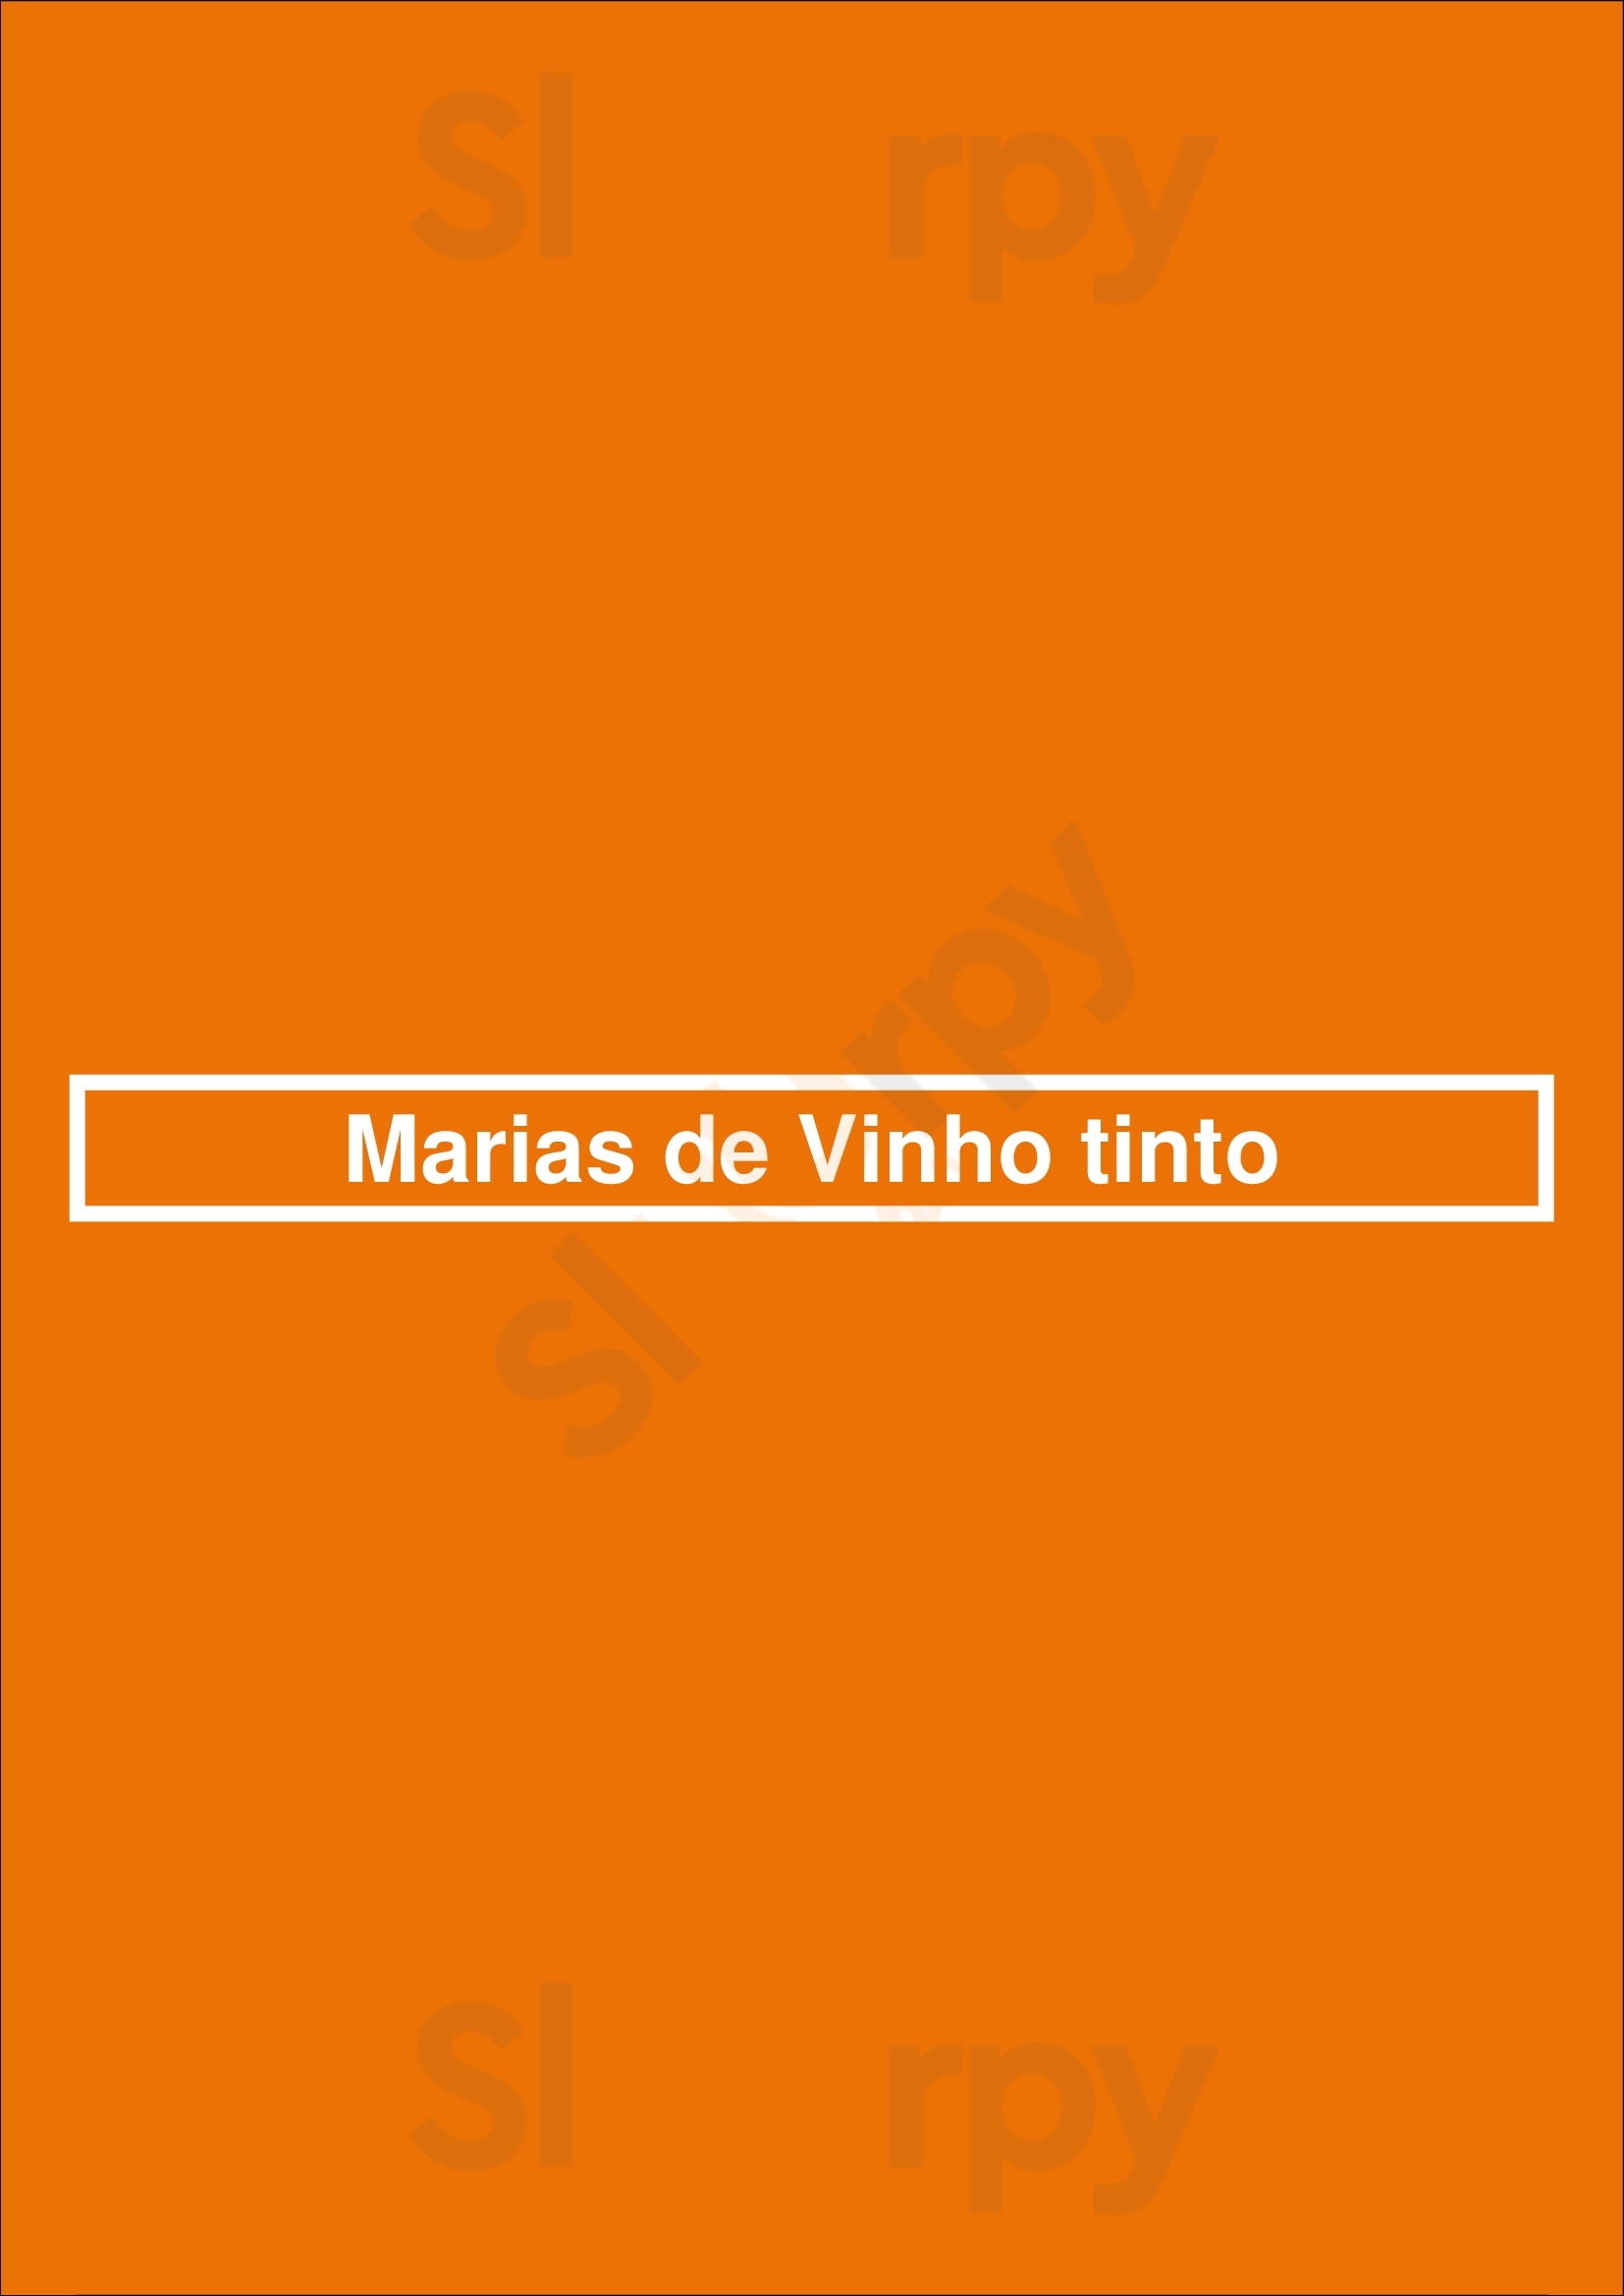 Marias De Vinho Tinto Lisboa Menu - 1